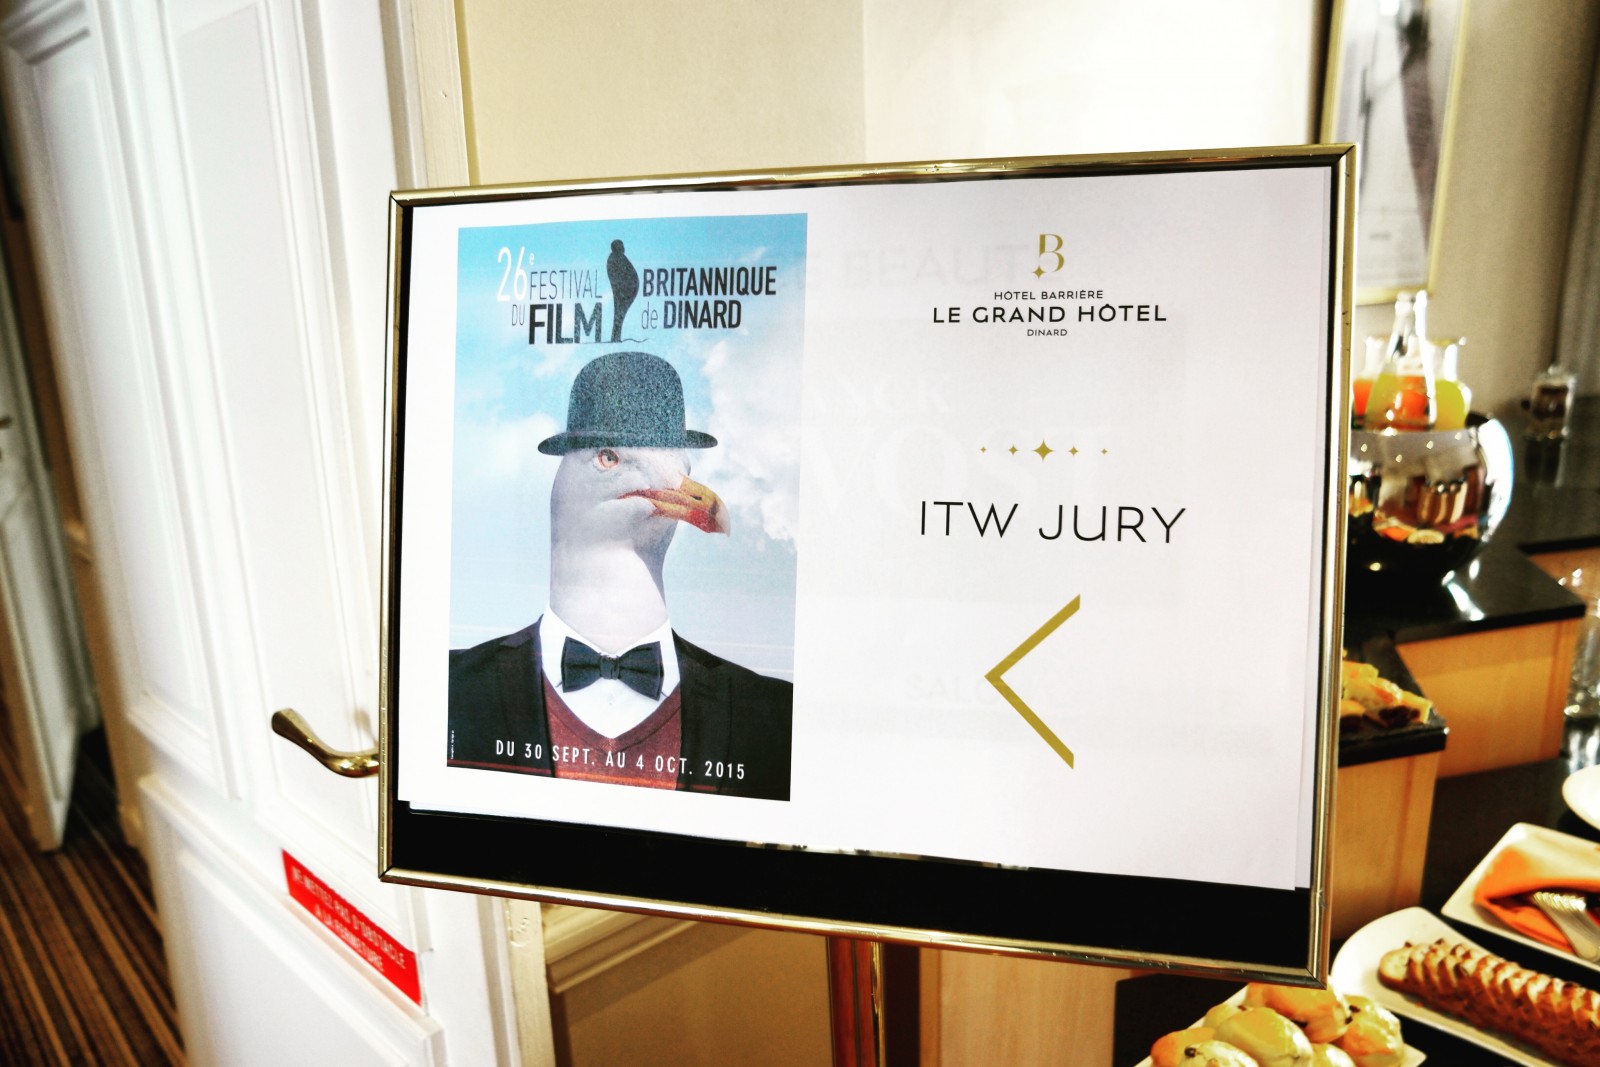 Panneau interview des membres du jury festival du film britannique de dinard Grand Hotel Barrière photo usofparis blog